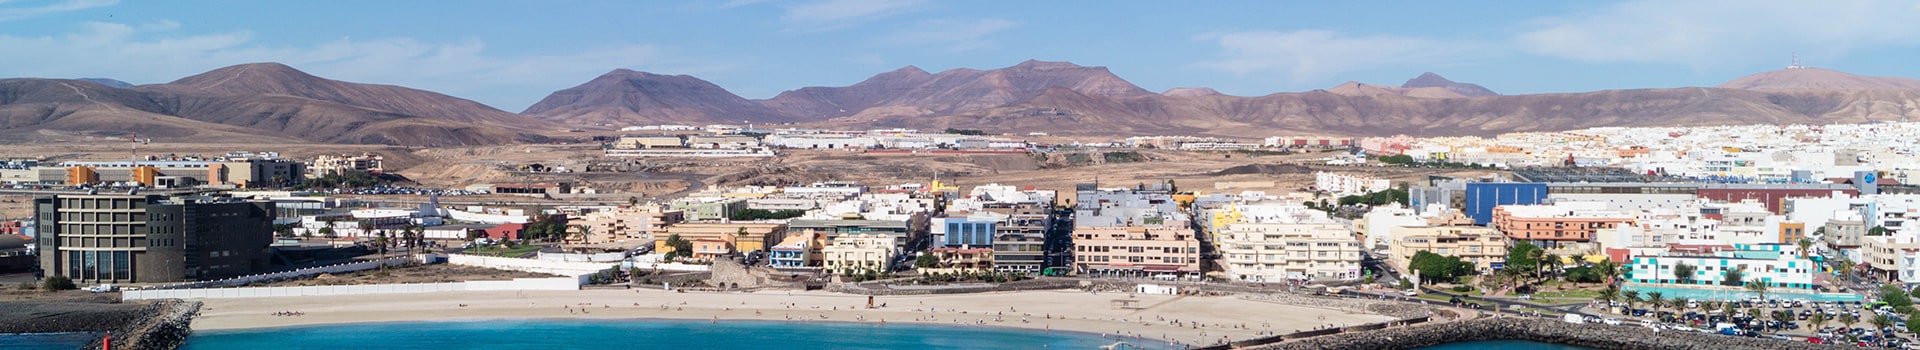 Valencia - Fuerteventura